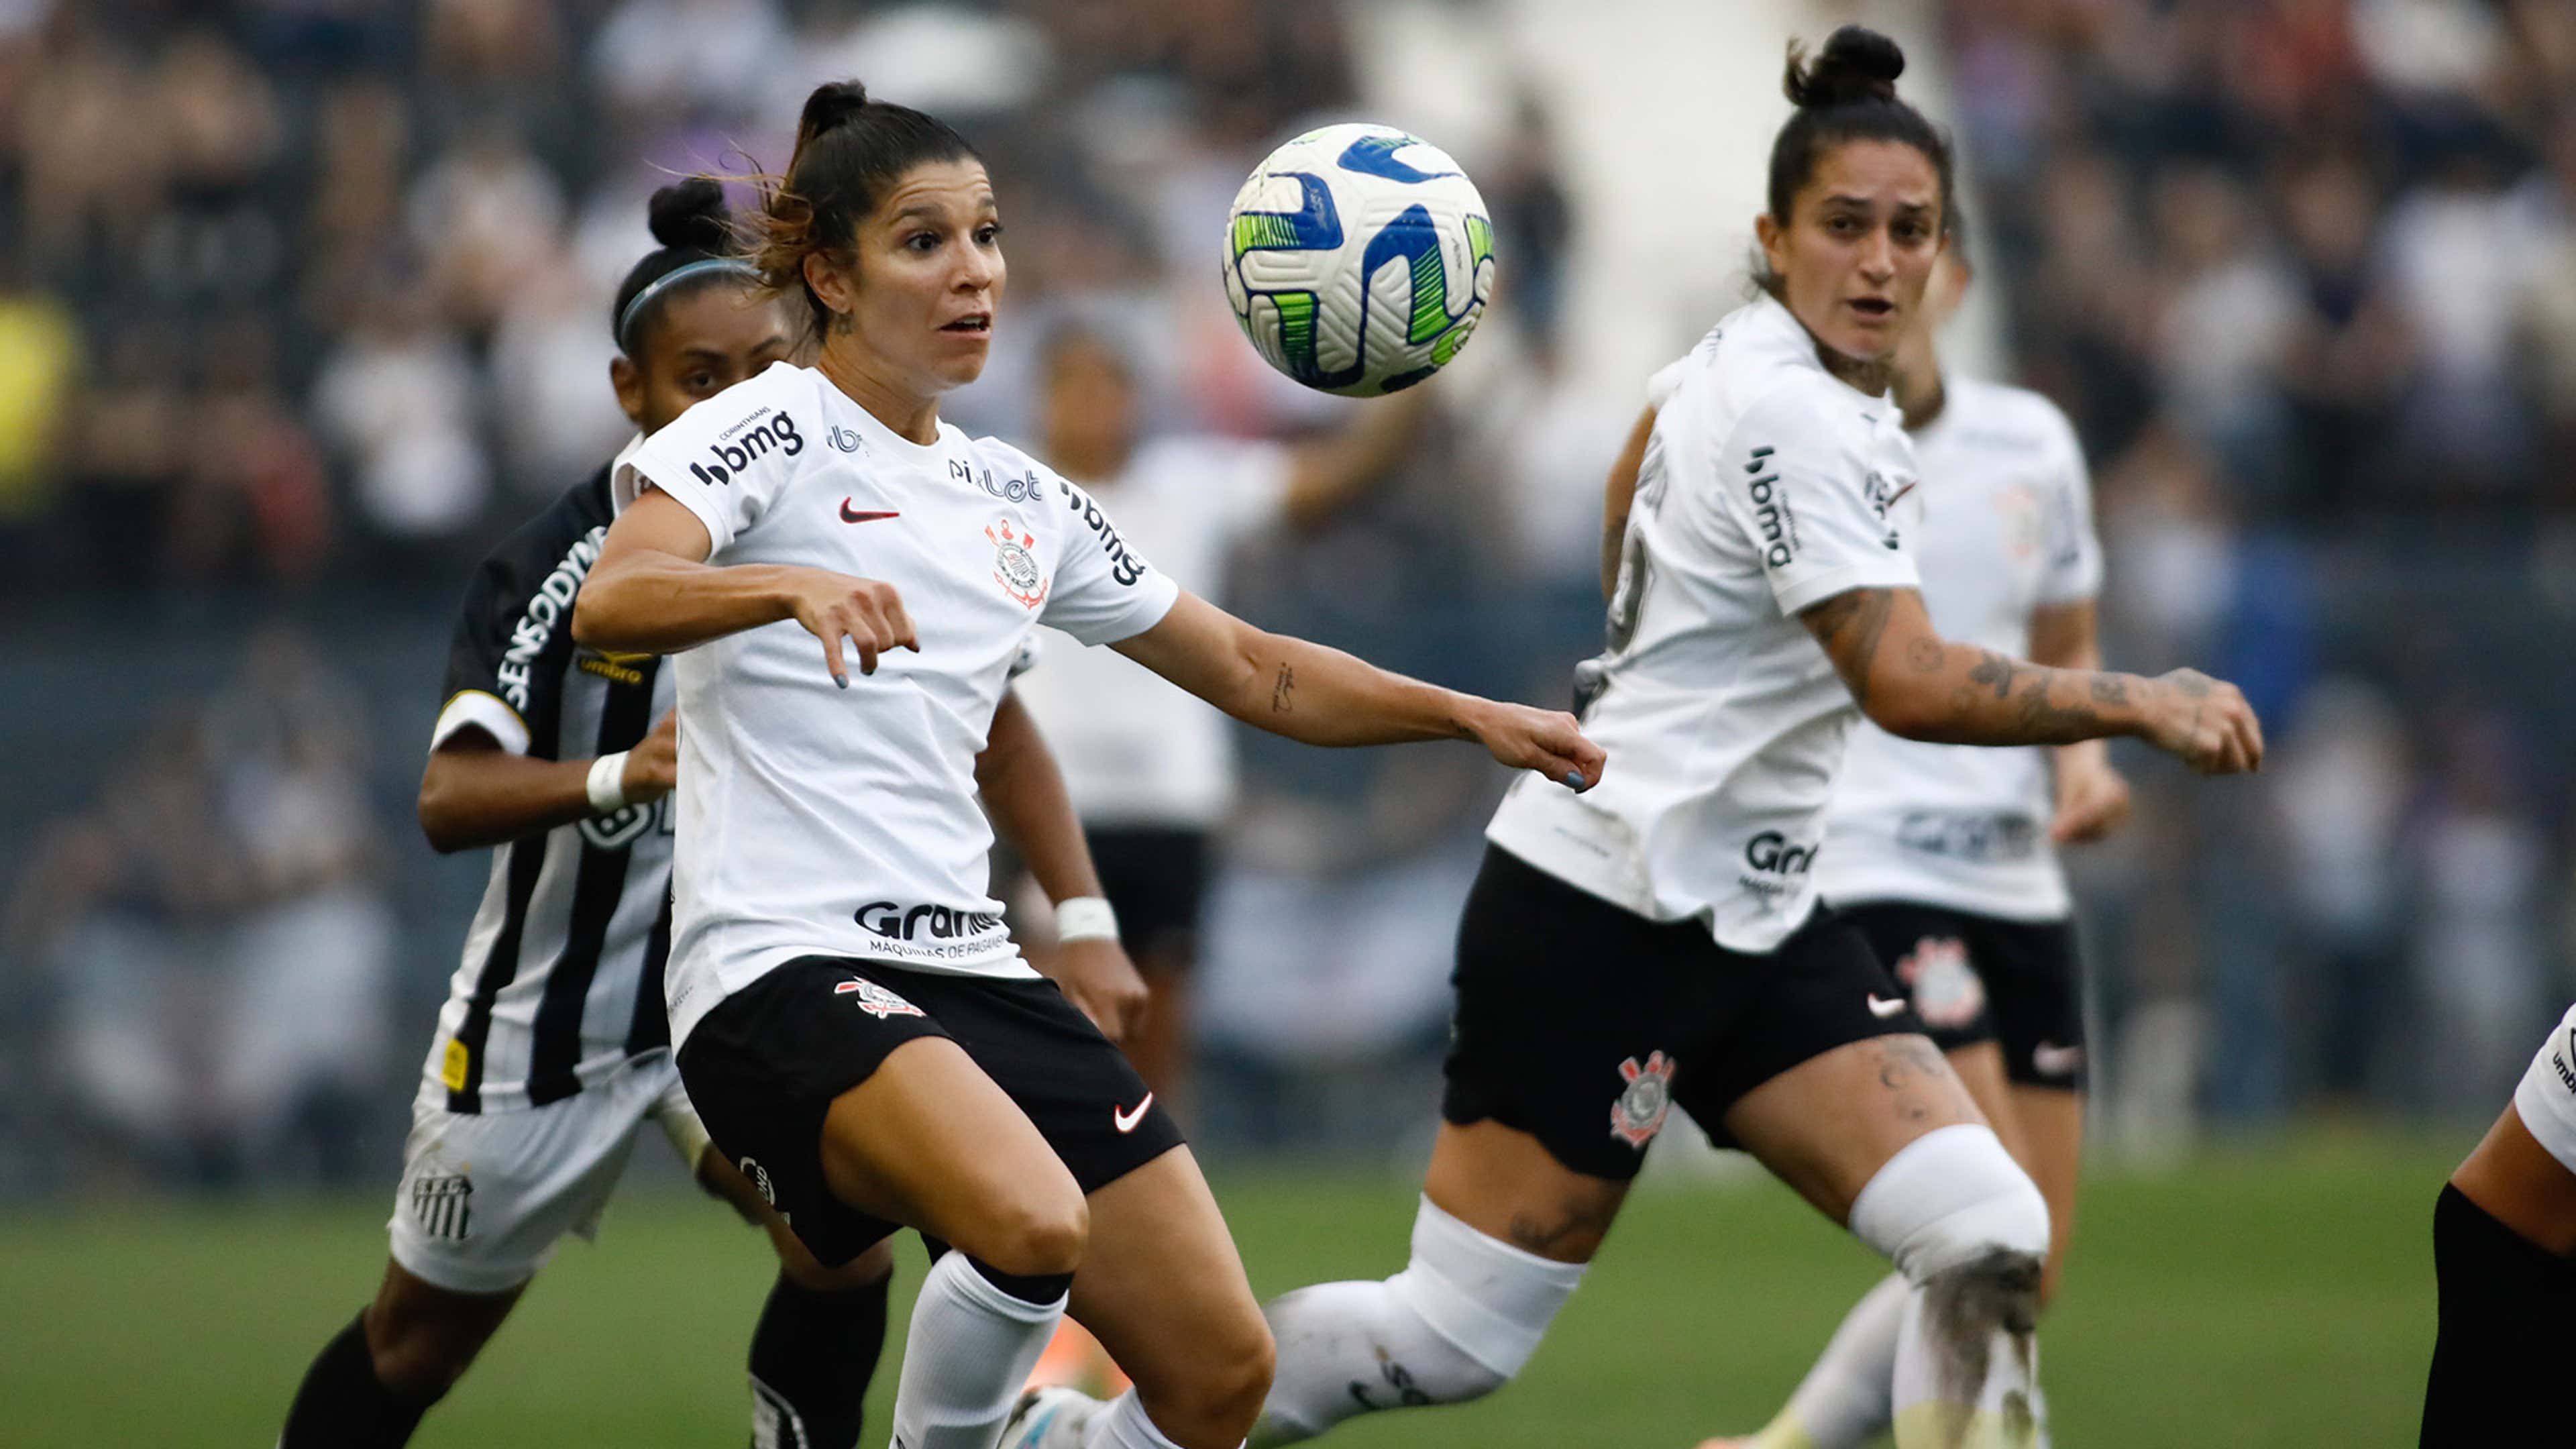 Ao vivo: Grêmio x Corinthians - Brasileirão de futebol feminino